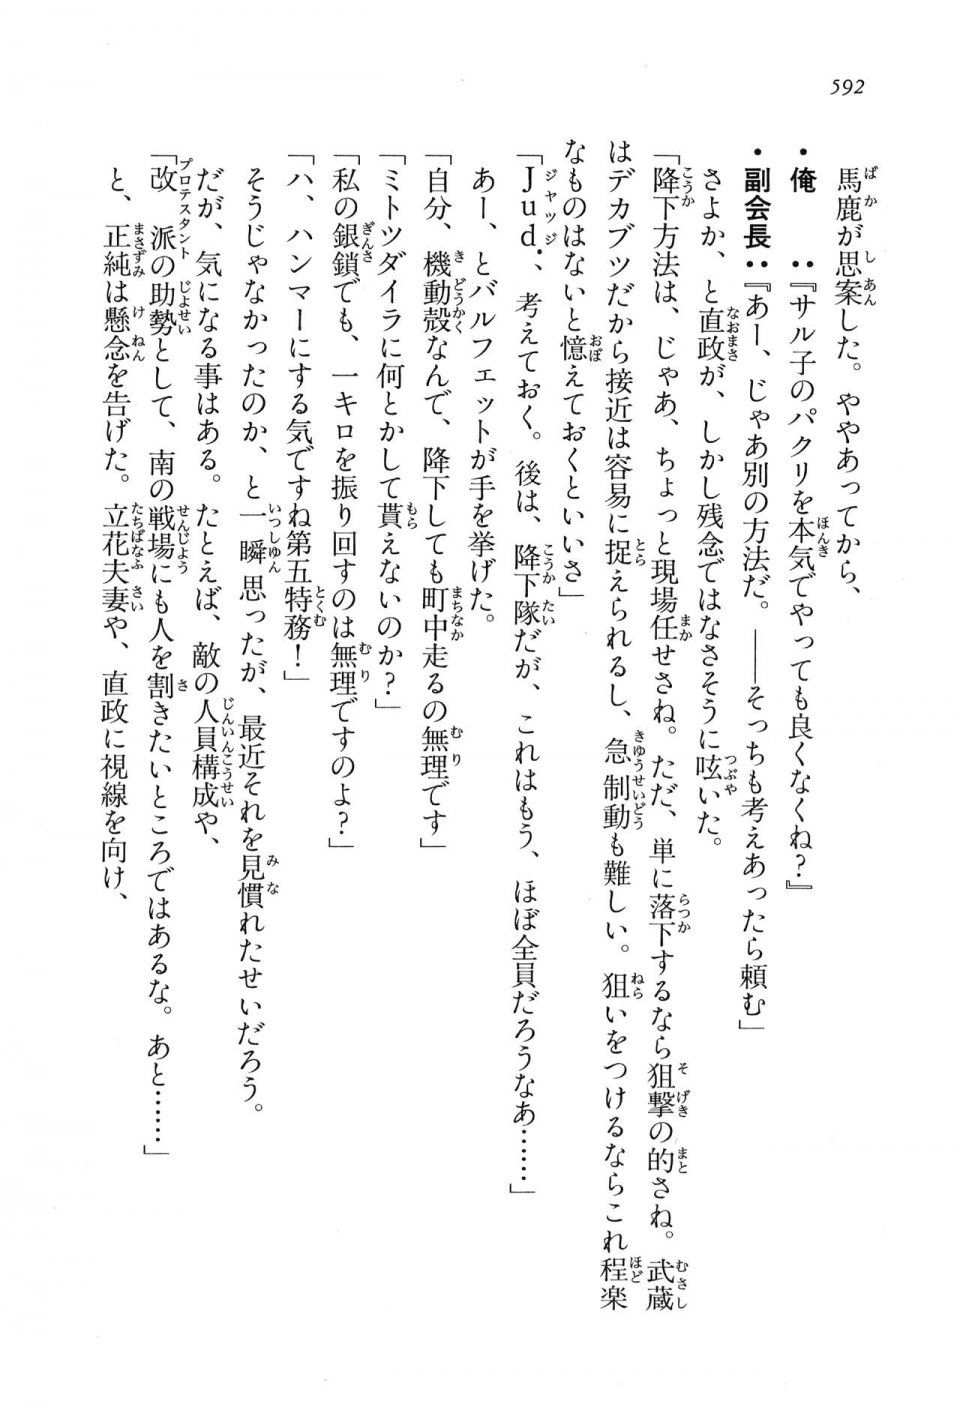 Kyoukai Senjou no Horizon LN Vol 16(7A) - Photo #592